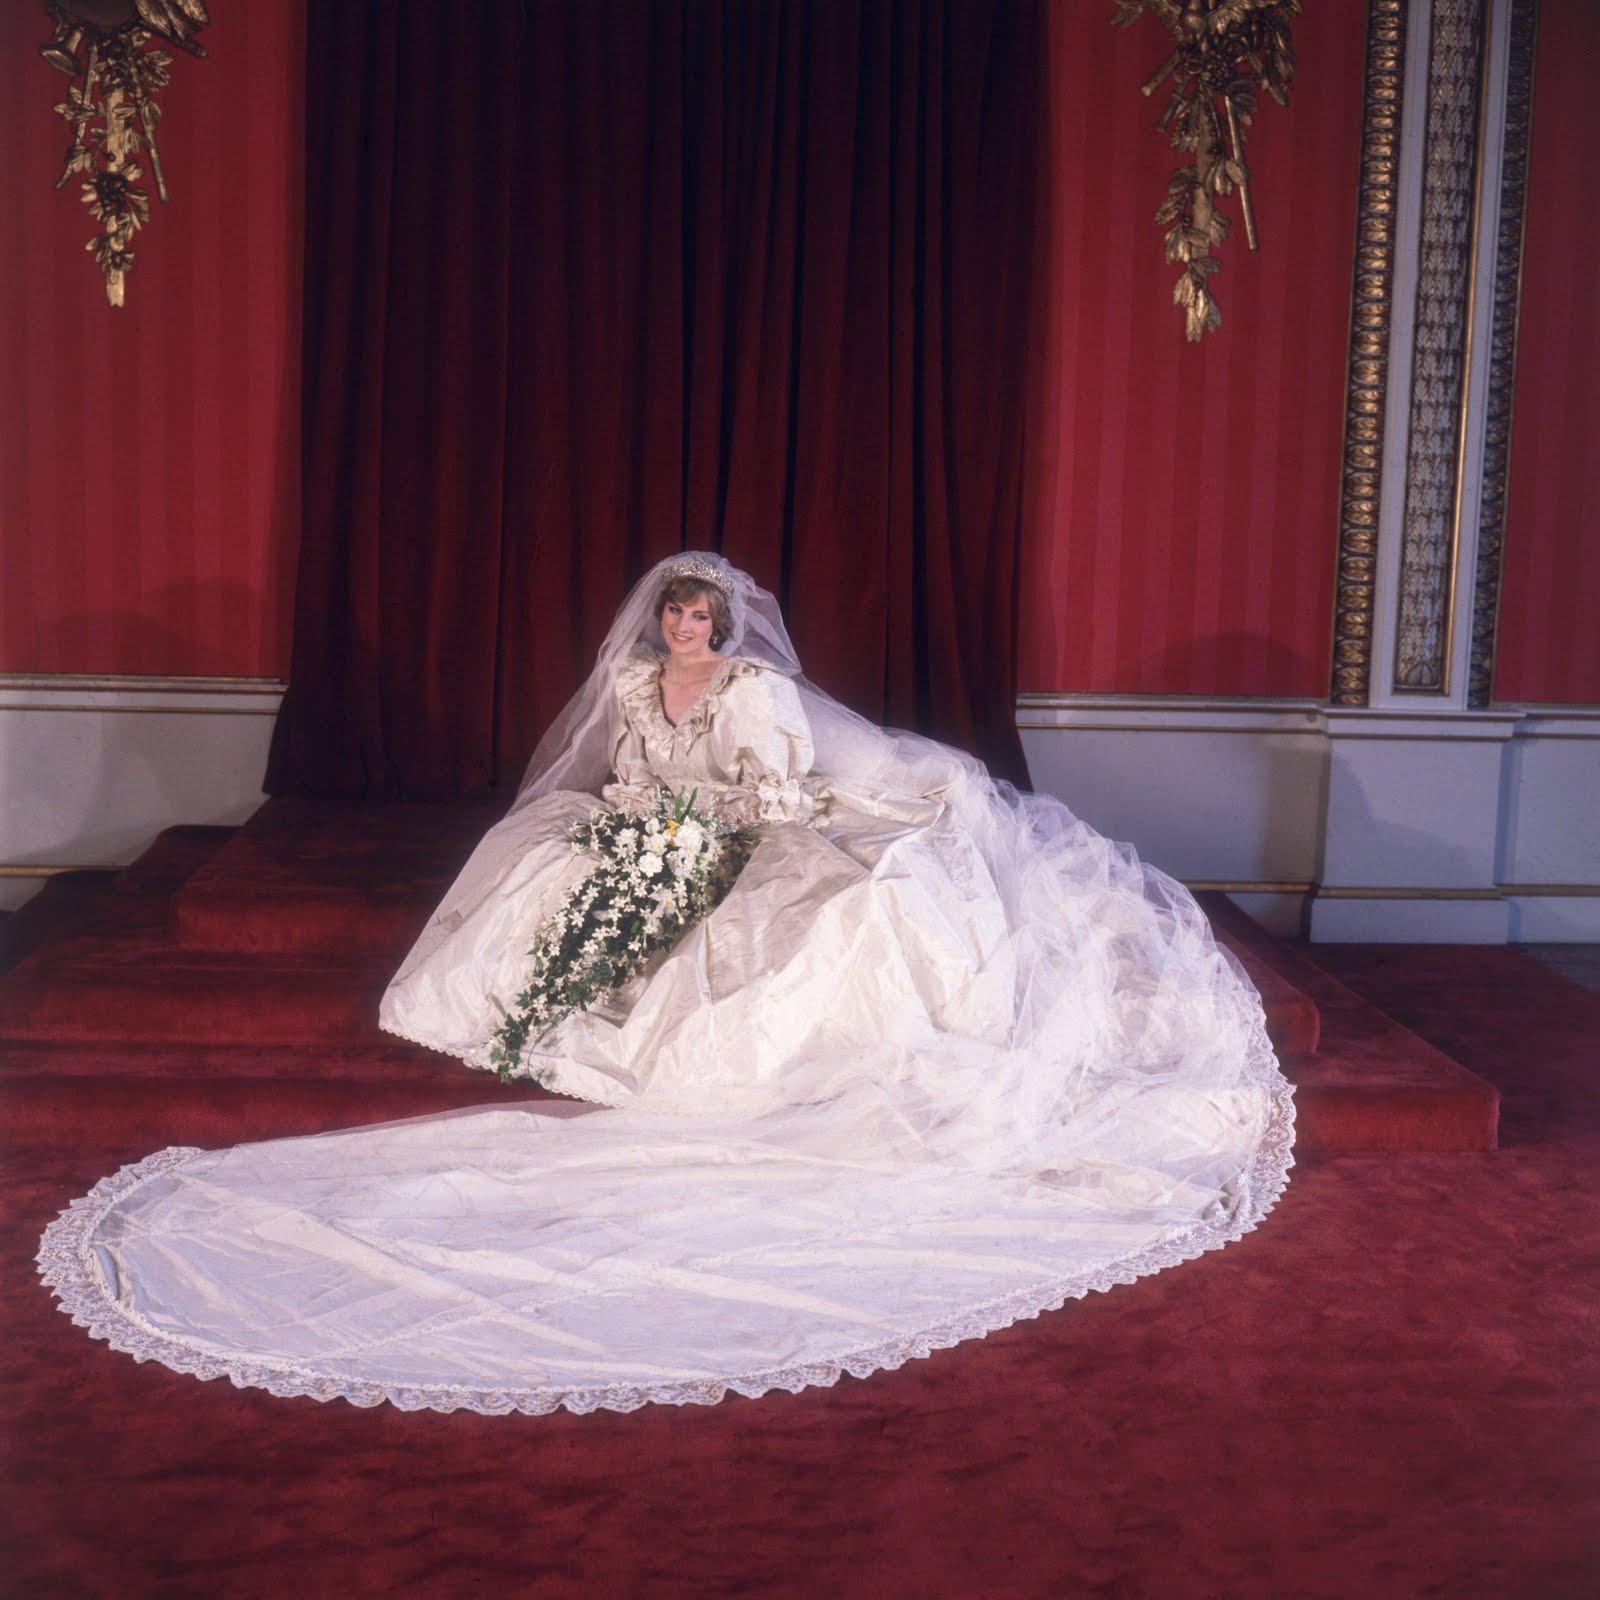 http://2.bp.blogspot.com/--axhLAjZzbQ/Ta6mdOJfNVI/AAAAAAAAGd4/hBD8f_aY9qI/s1600/1981-Princess-Diana-wedding-dress-3239308.jpg